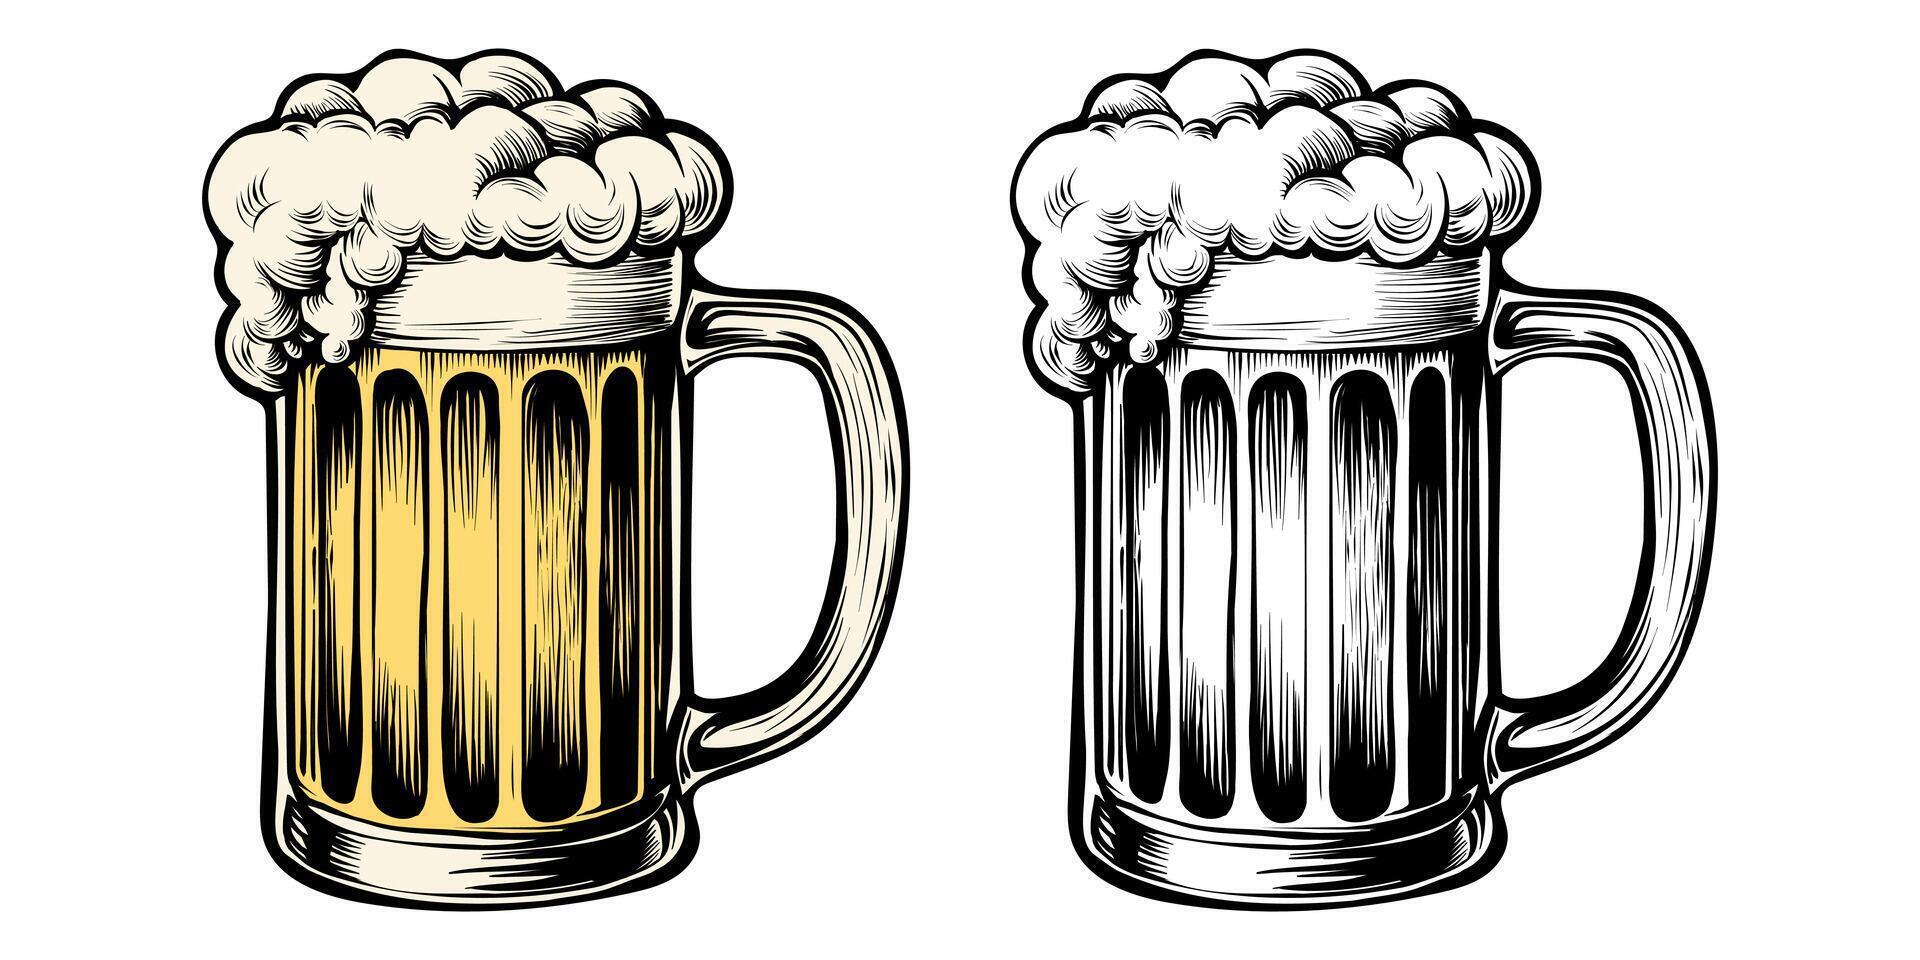 Glas von Bier isoliert auf Weiß Hintergrund, Hand gezeichnet Tinte skizzieren. Vektor Jahrgang graviert Illustration.